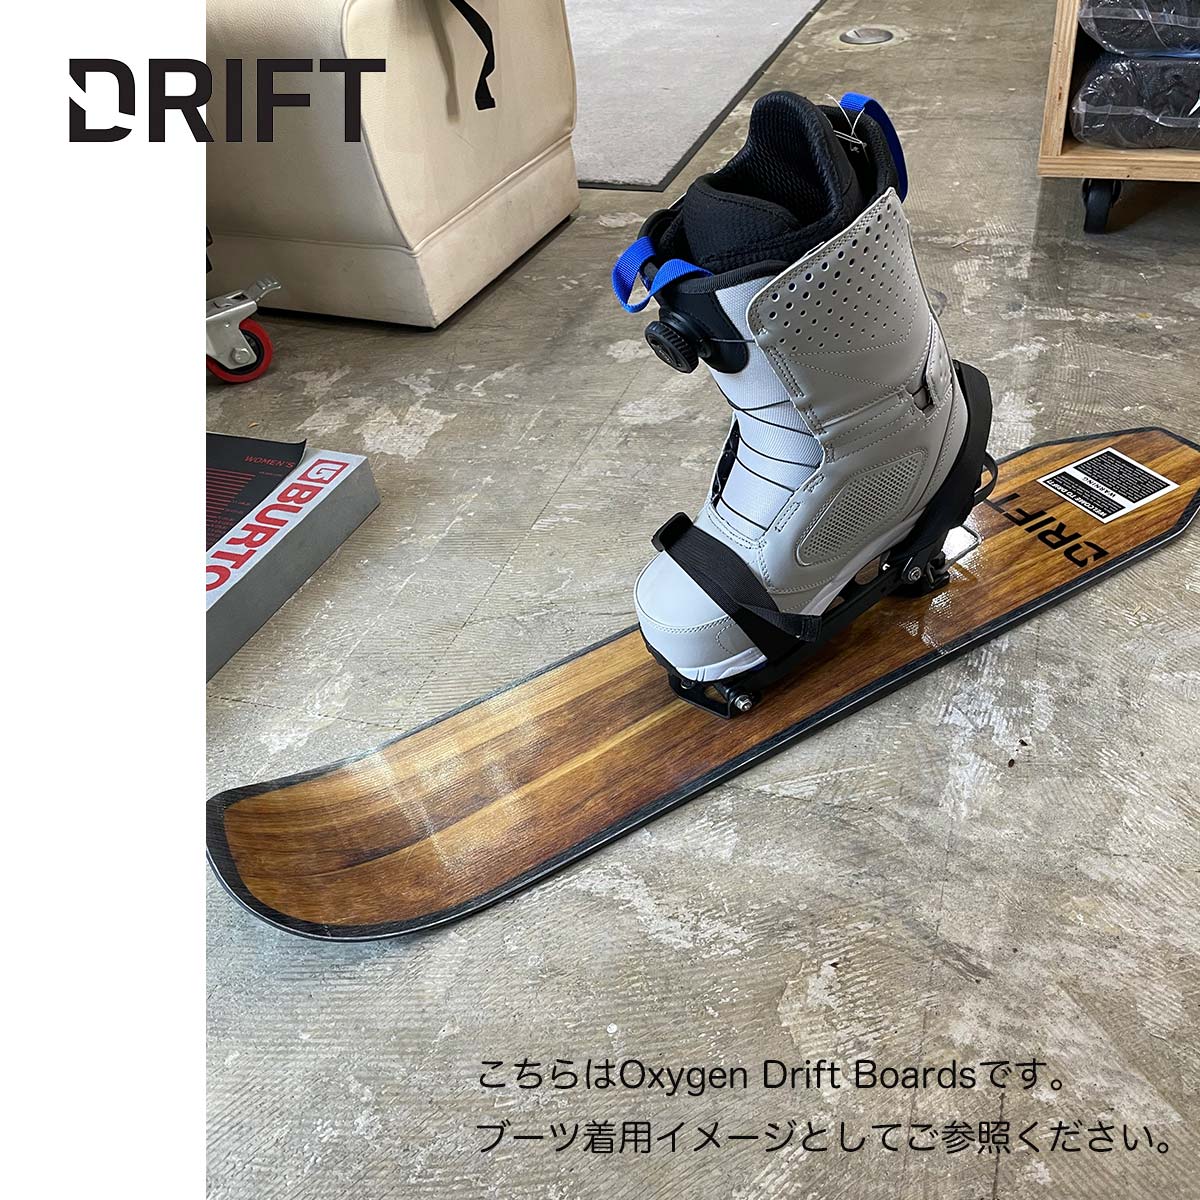 スノーシュー ツーリングスキー ドリフトボード DRIFT Carbon Drift Board カーボン 超軽量 ナイロン製クライミングスキン  スノーボード バックカントリー ハイクアップ 特許取得 | masa surf and snow